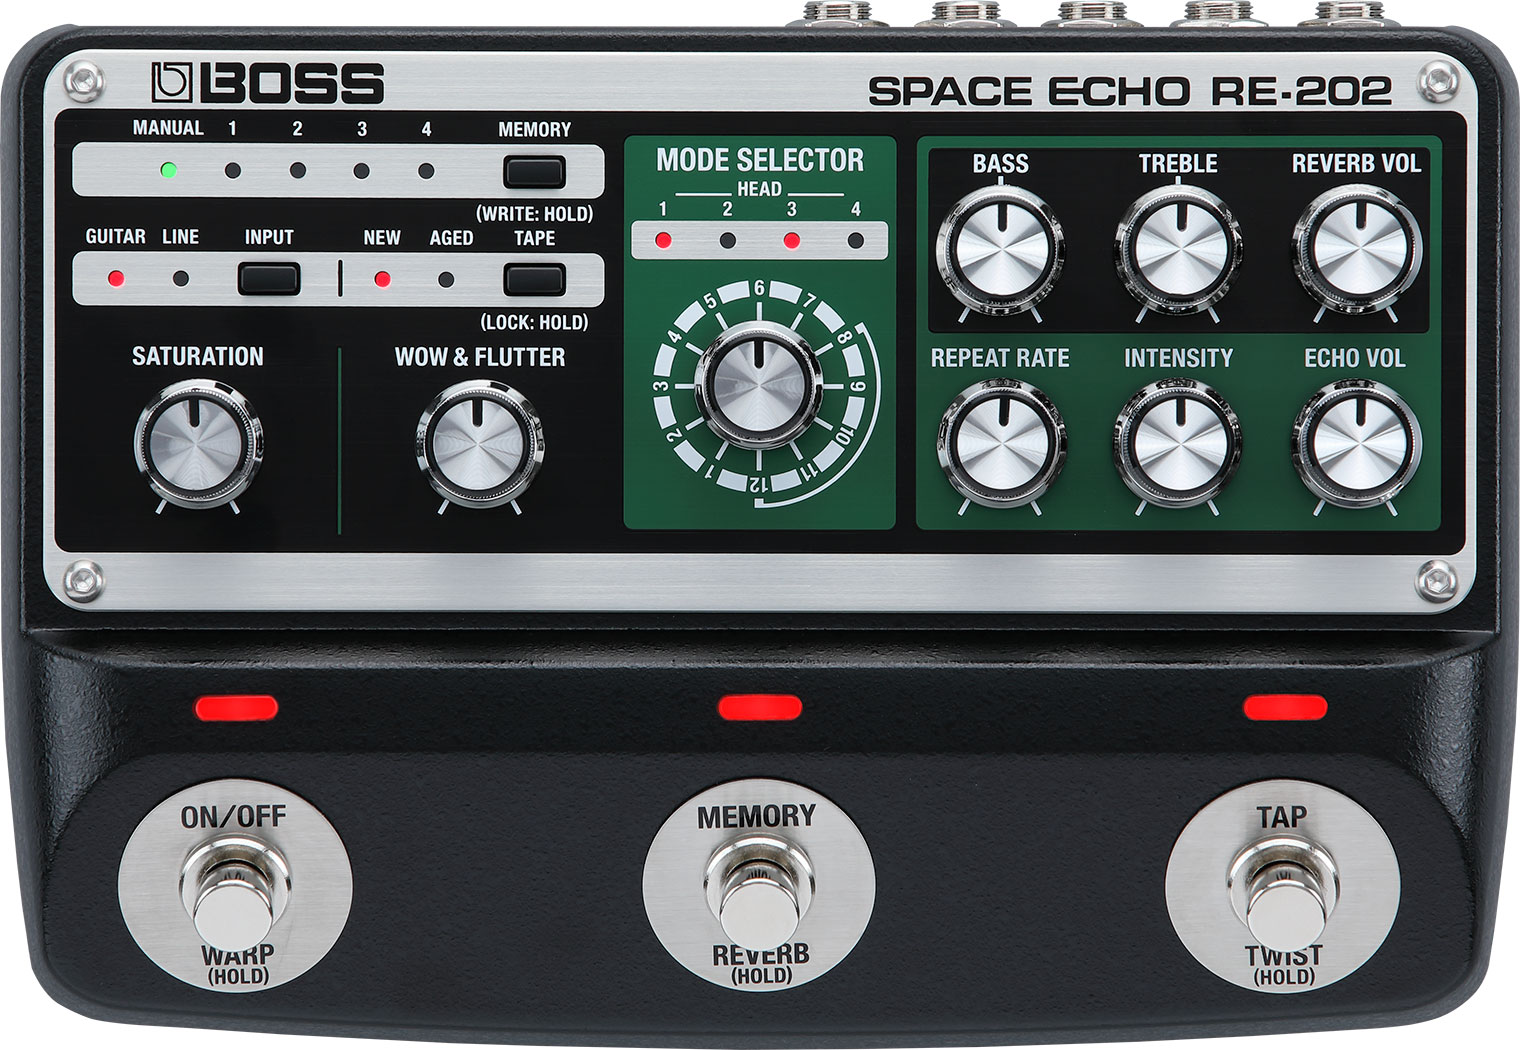 RE-202 | Space Echo - BOSS